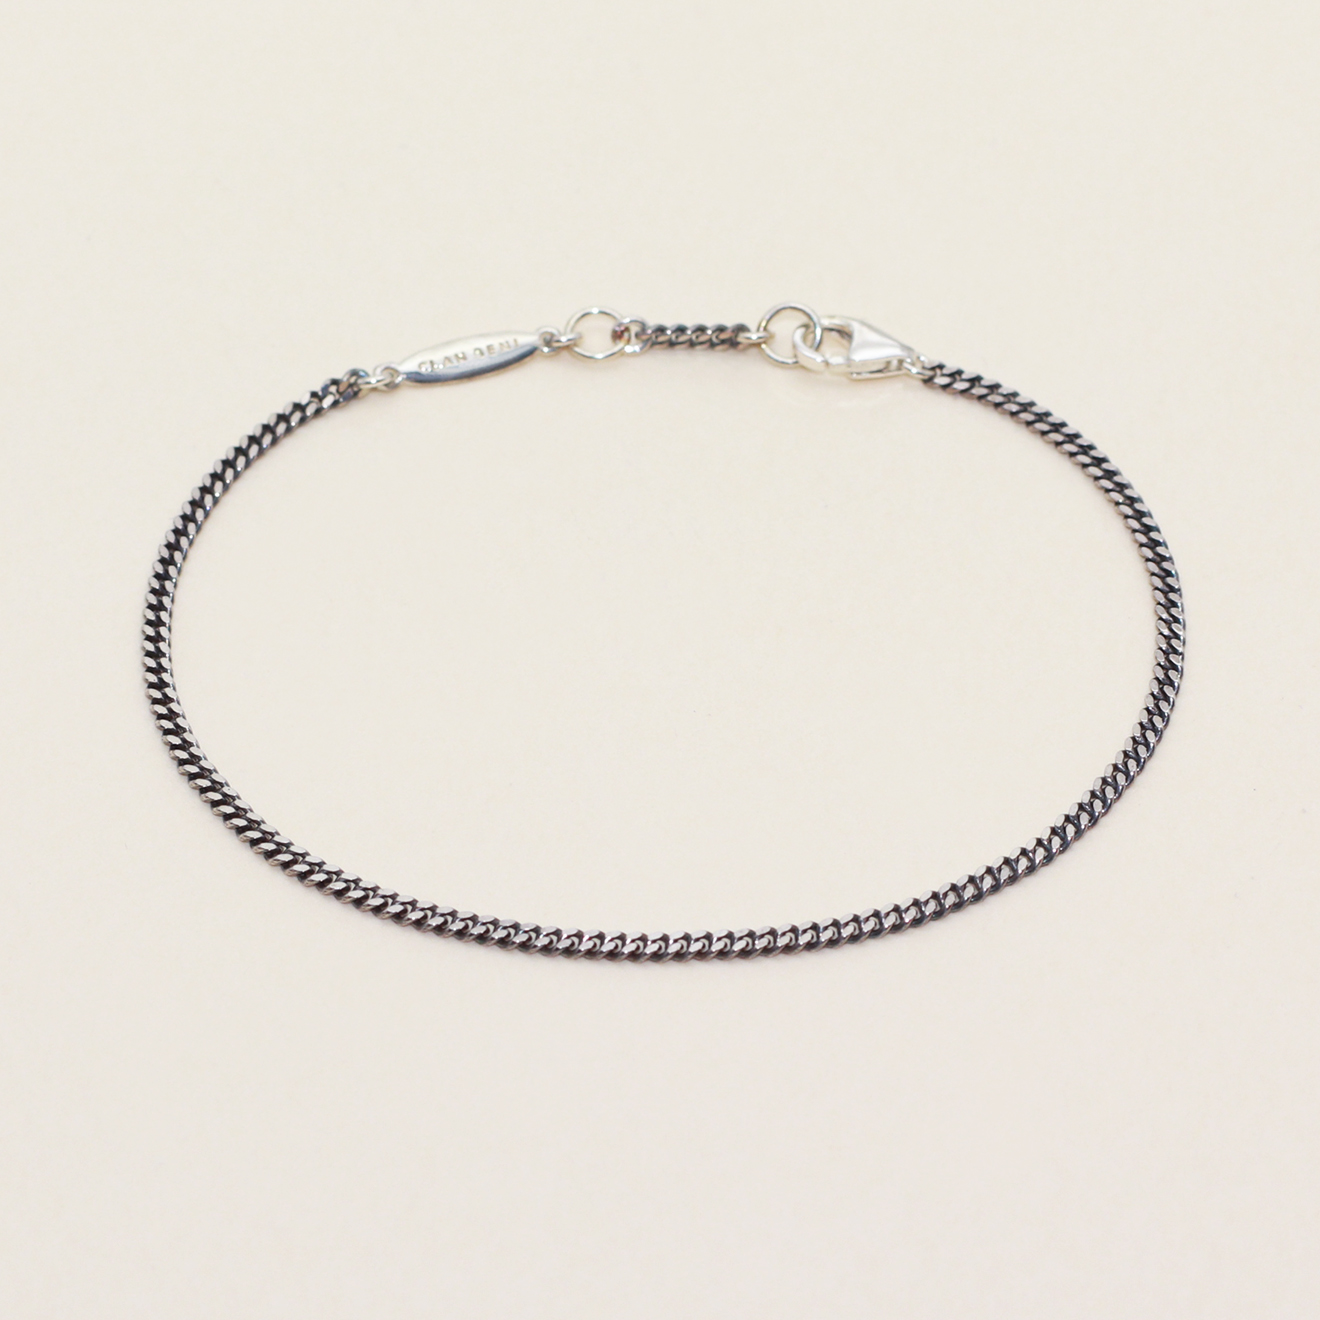 OD Curve Chain Bracelet